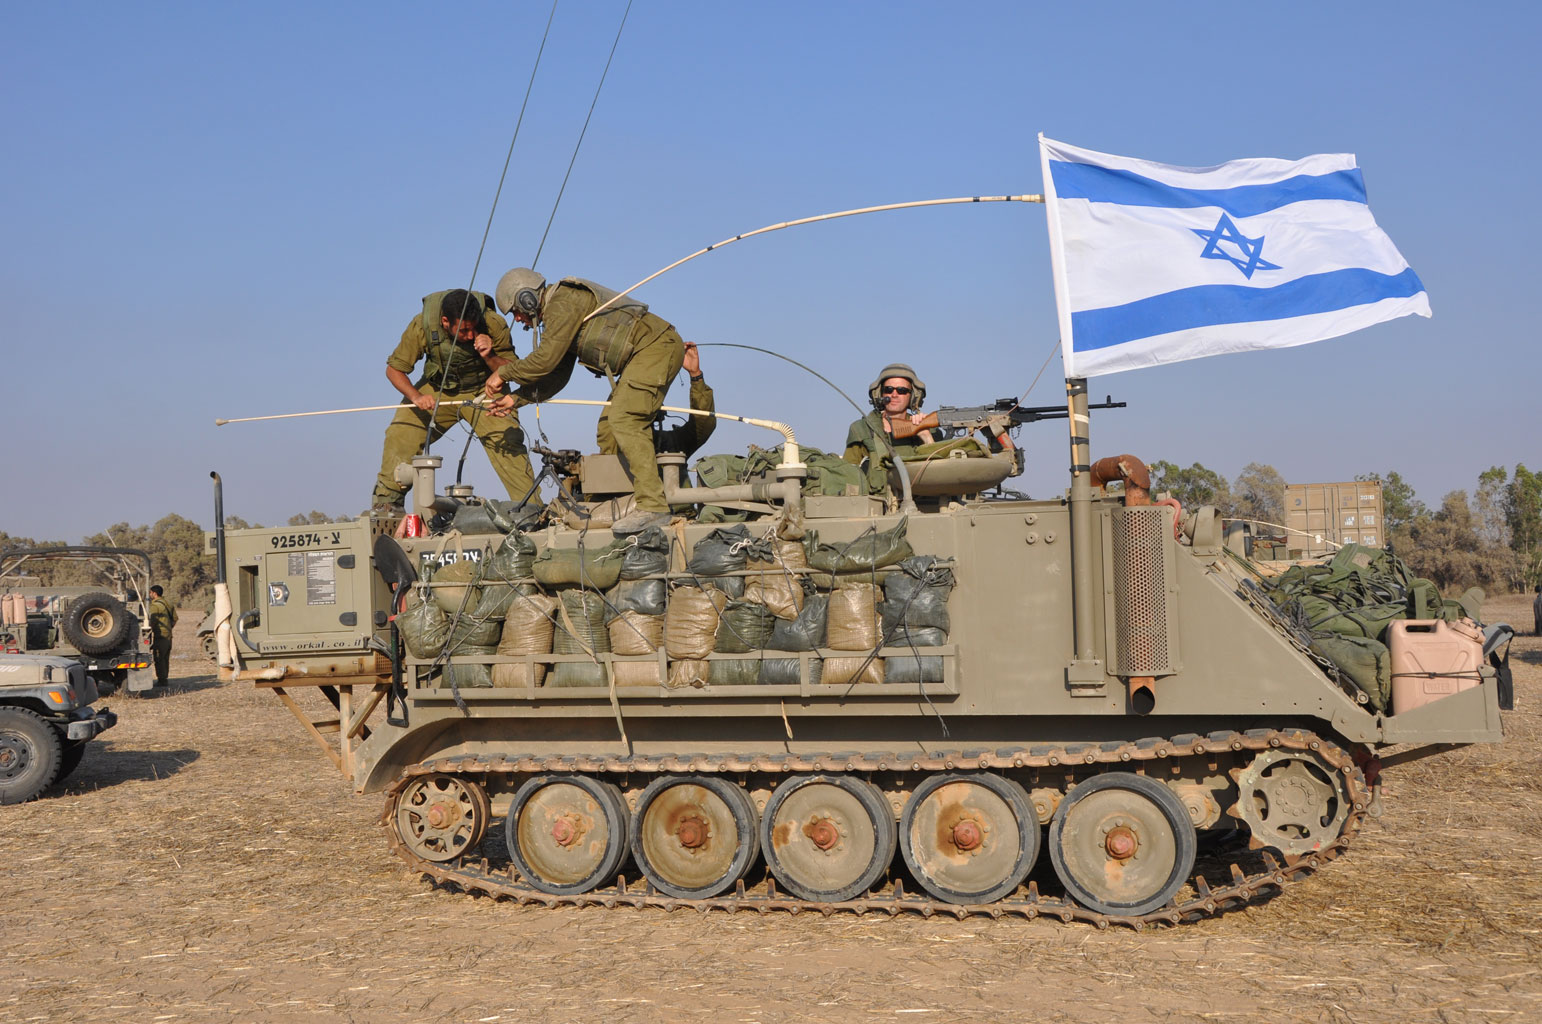 Pojazd opancerzony przy granicy ze Strefą Gazy. IDF, Flickr 2.0. by SA